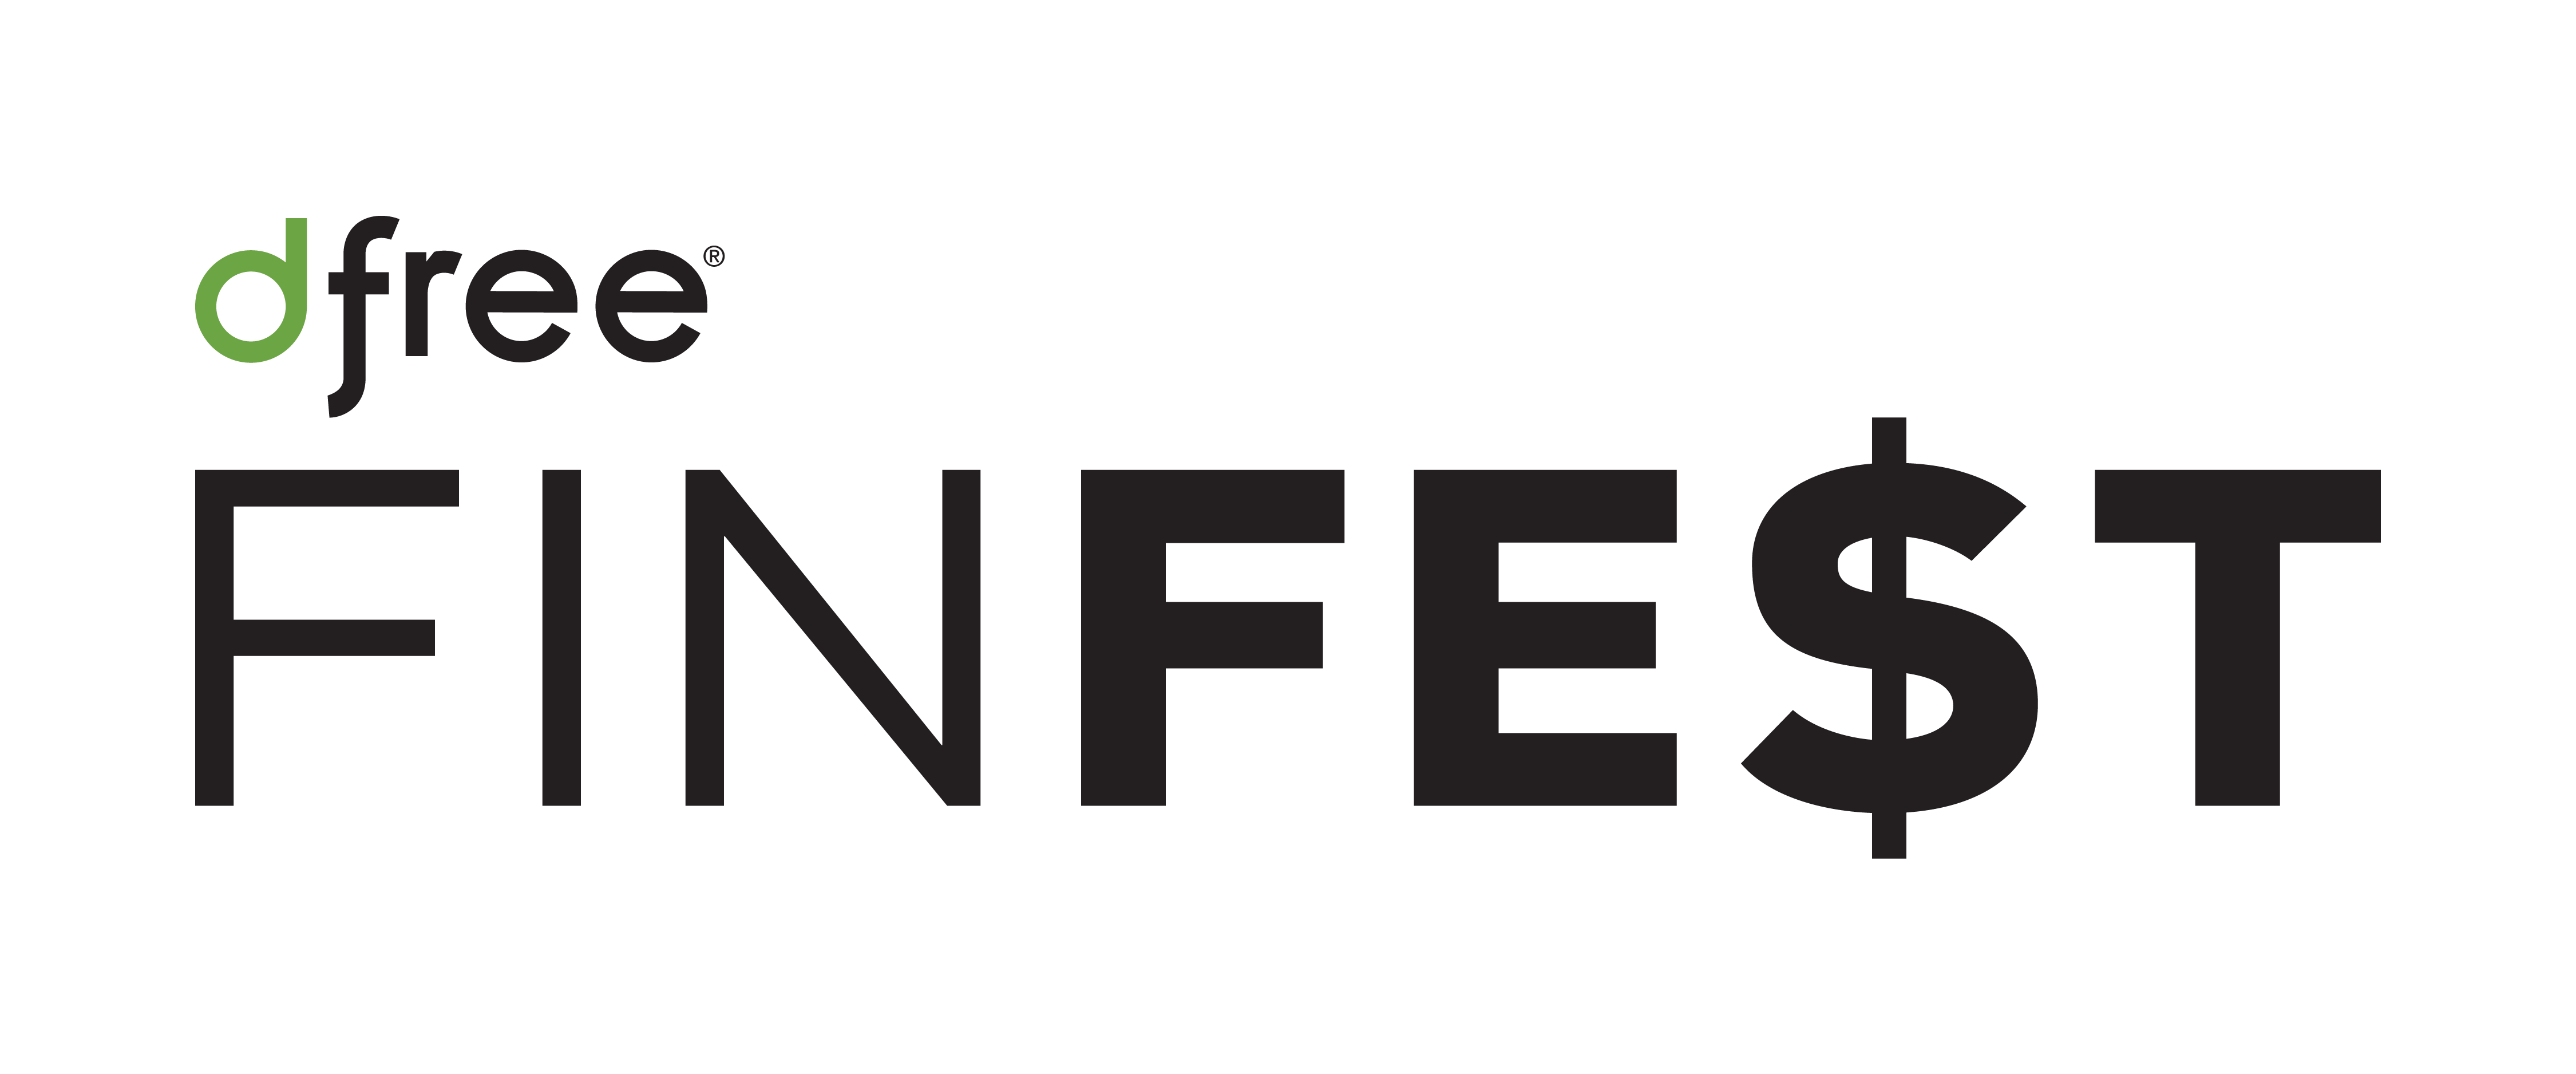 dfree® FINfest – A F